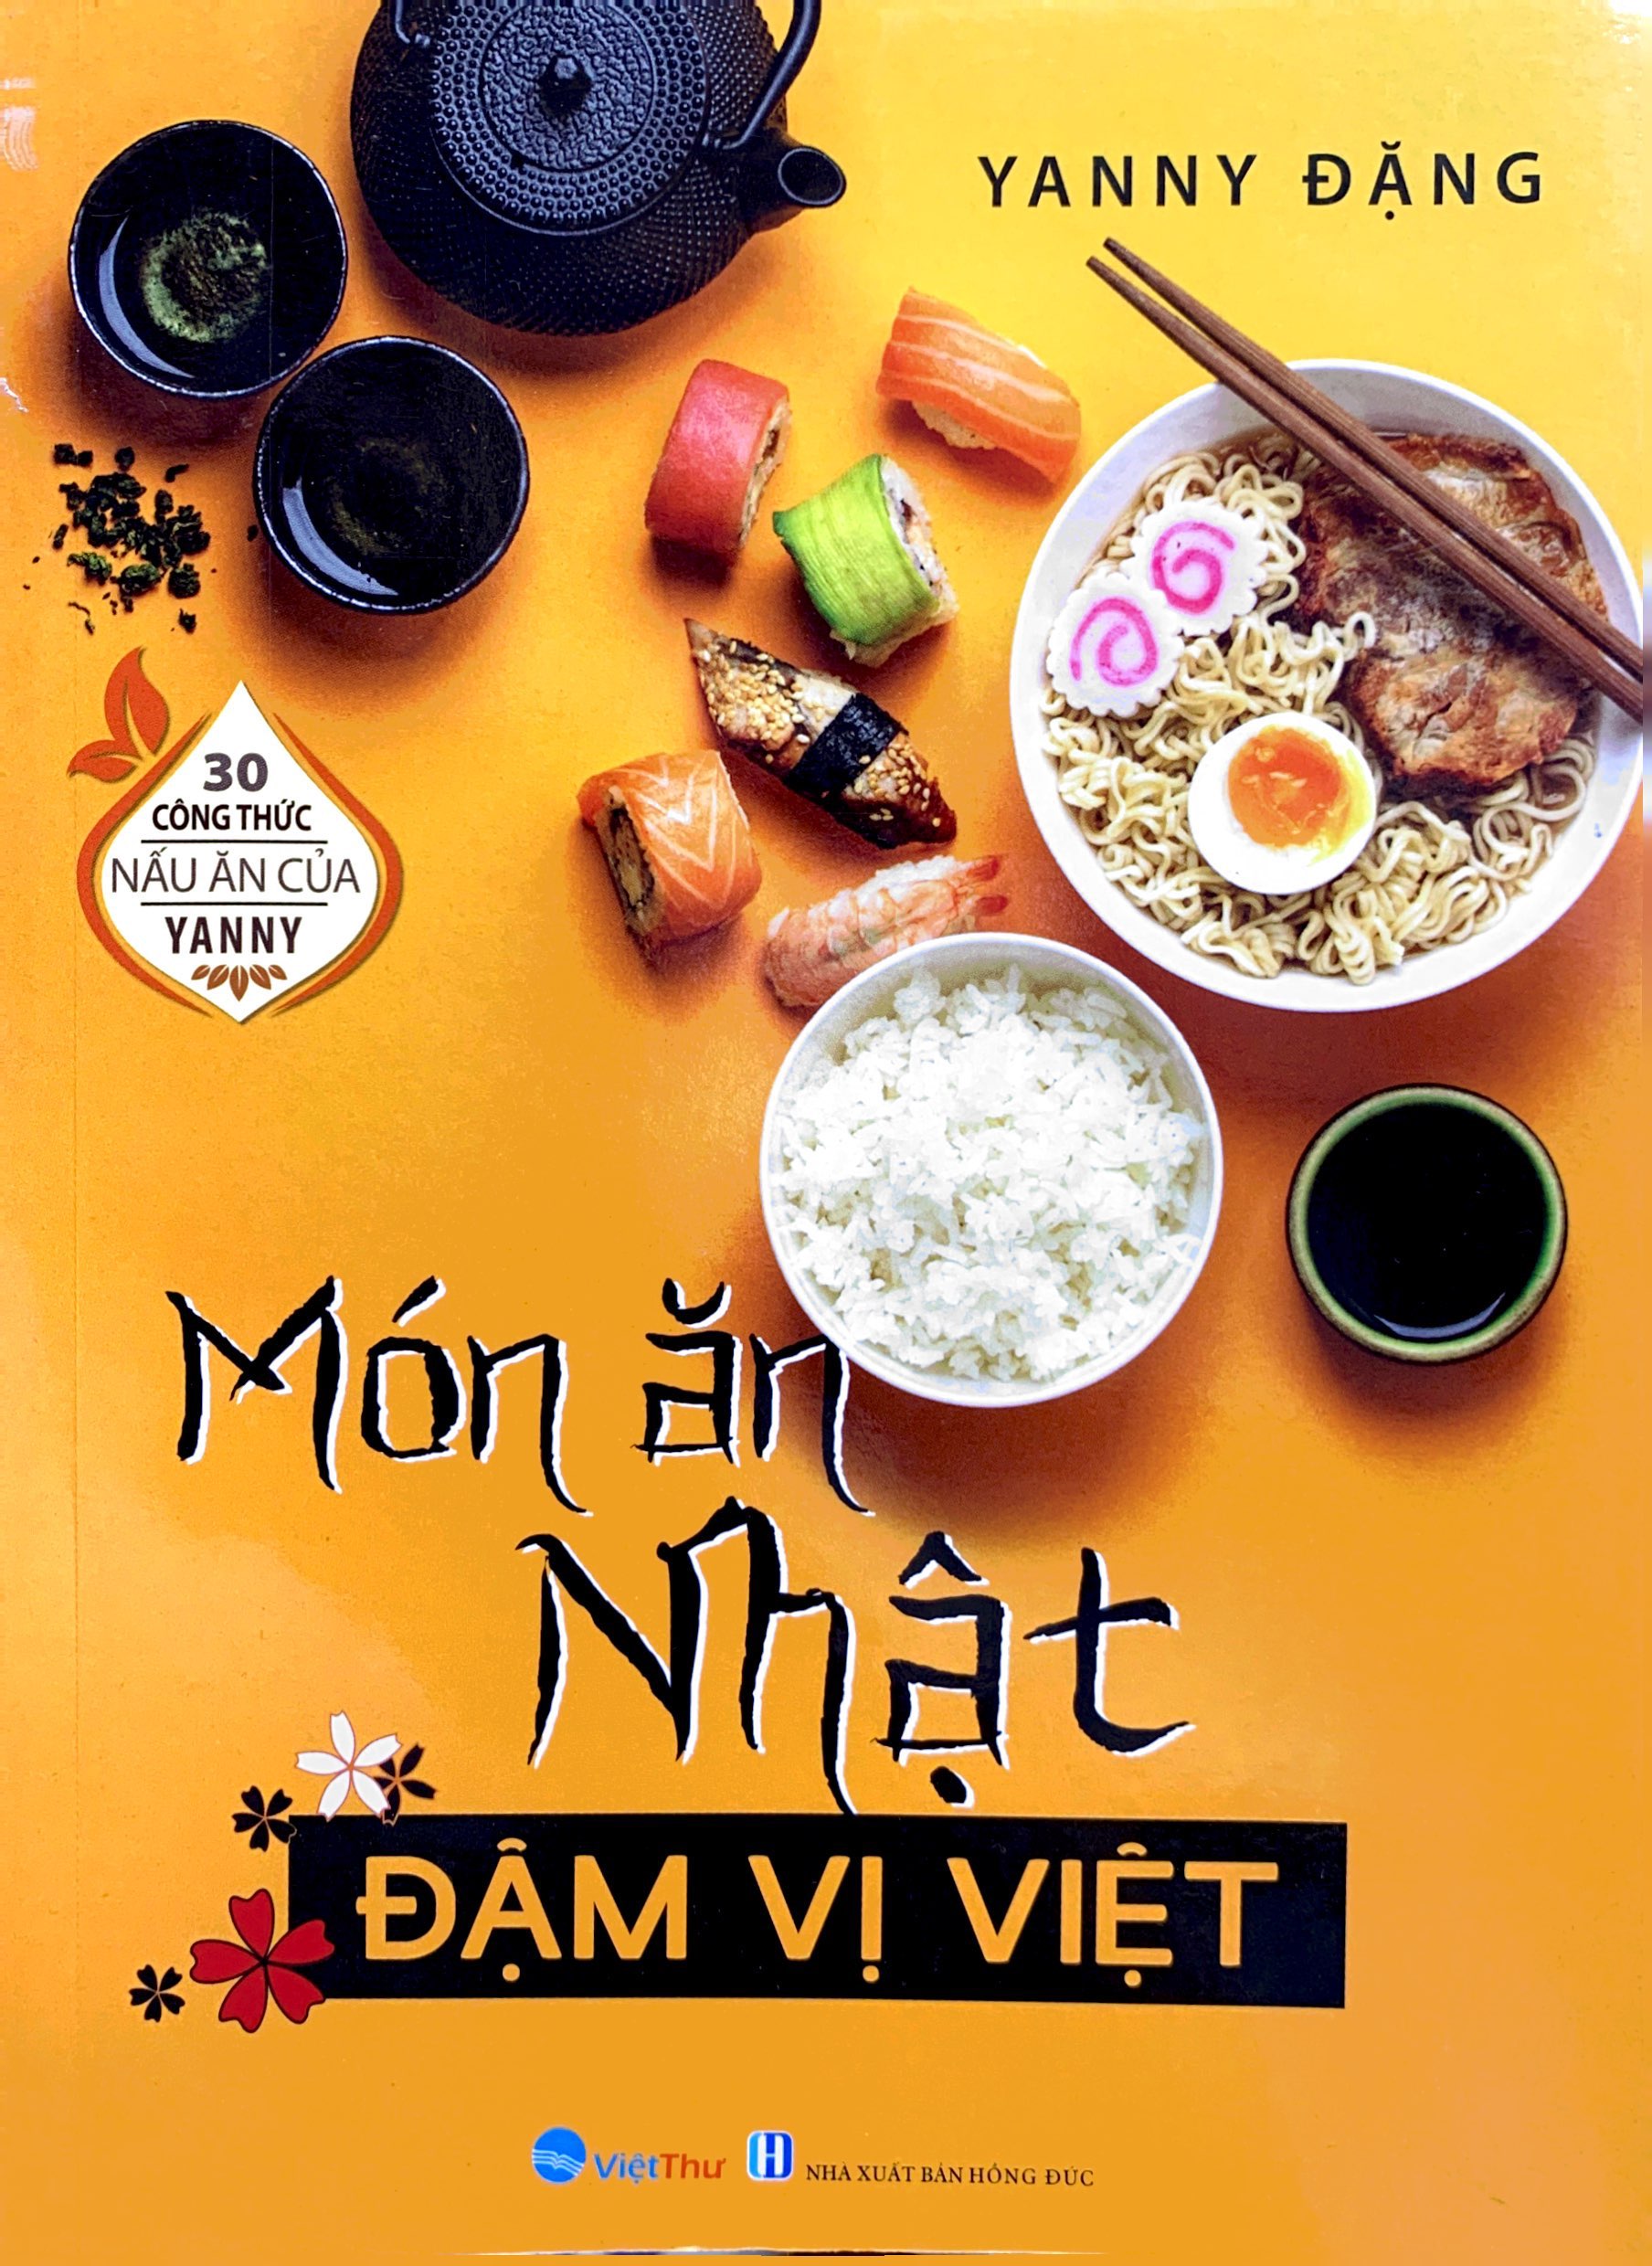 30 Công Thức Nấu Ăn Của Yanny - Món Ăn Nhật Đậm Vị Việt - VT